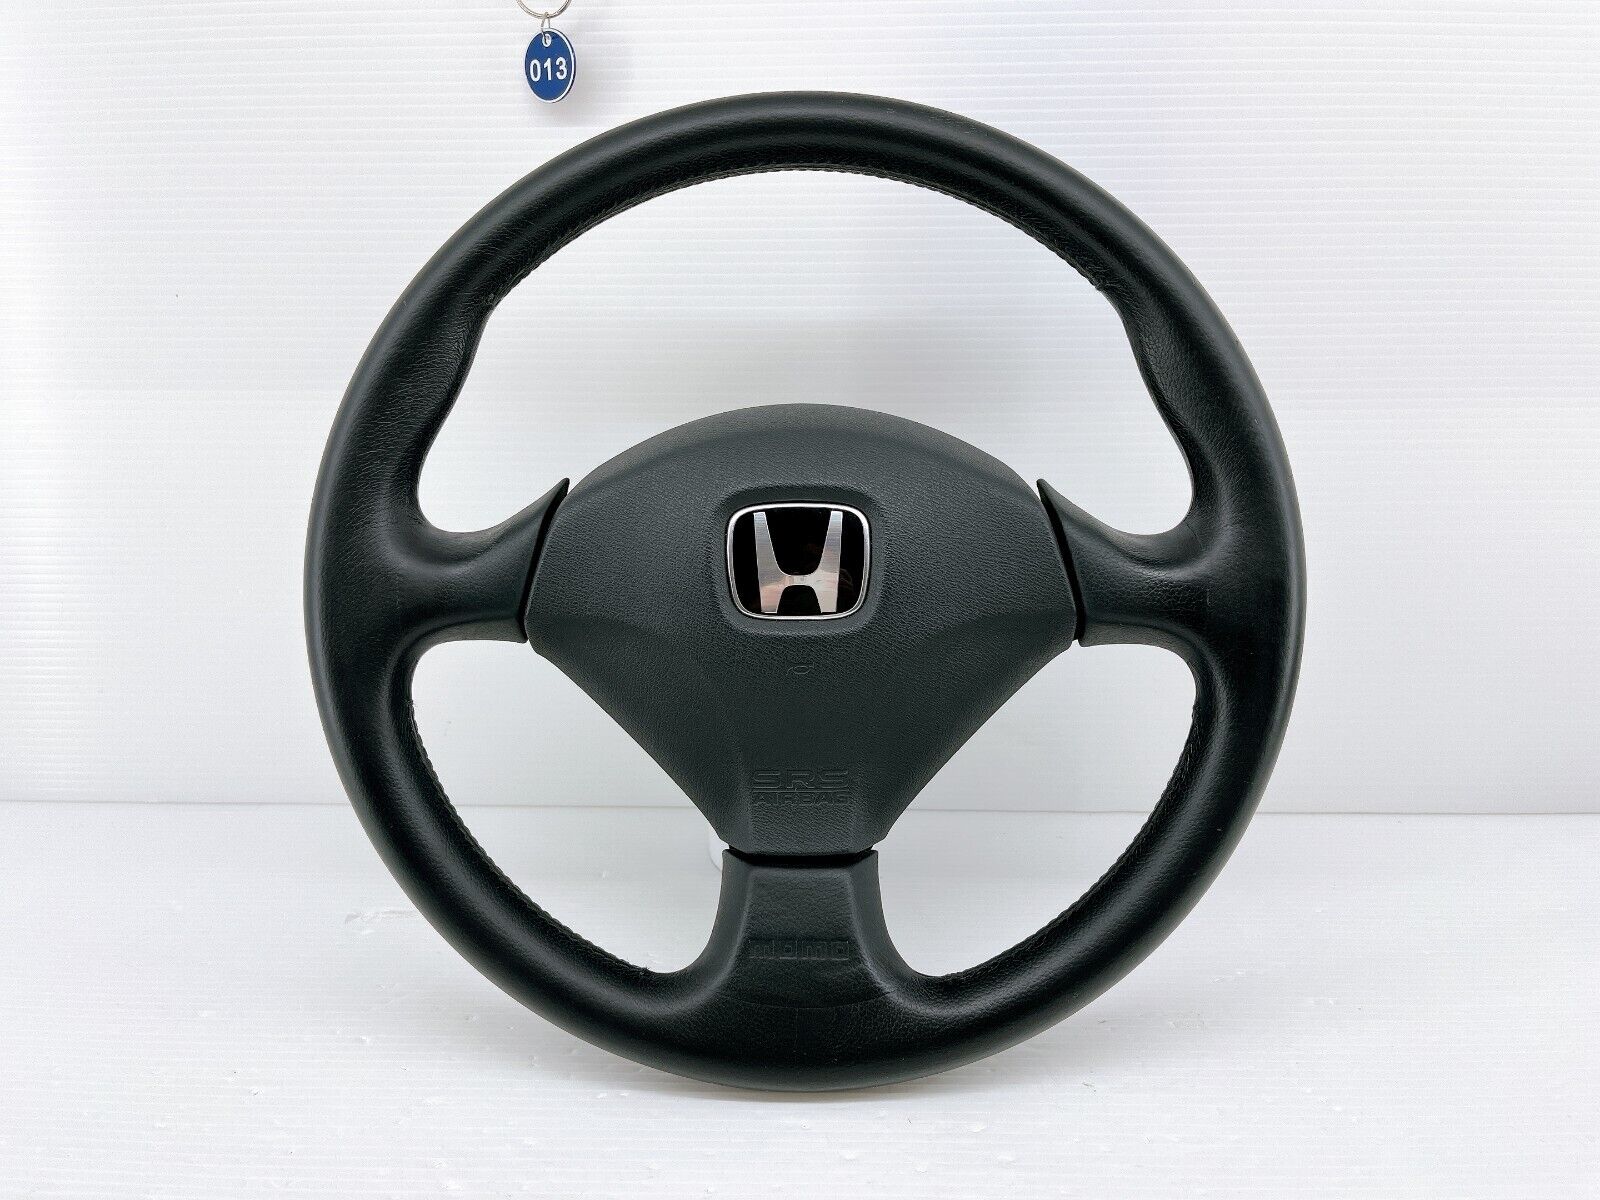 JDM Honda Integra DC5 iS Genuine Steering Wheel OEM Type S RSX CL7 EK9 EP3 013